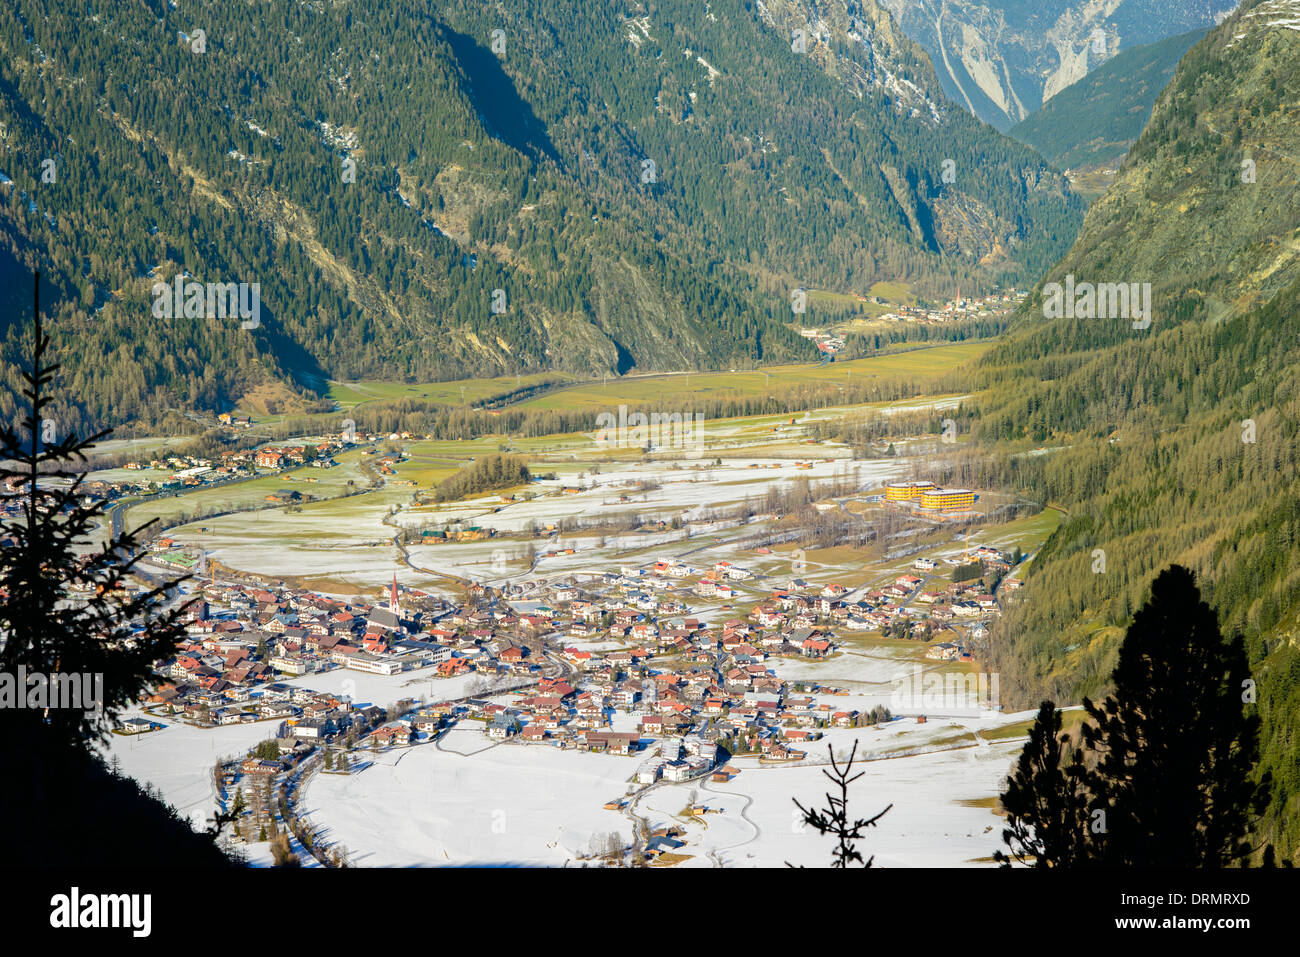 Mountain village in Austria Stock Photo